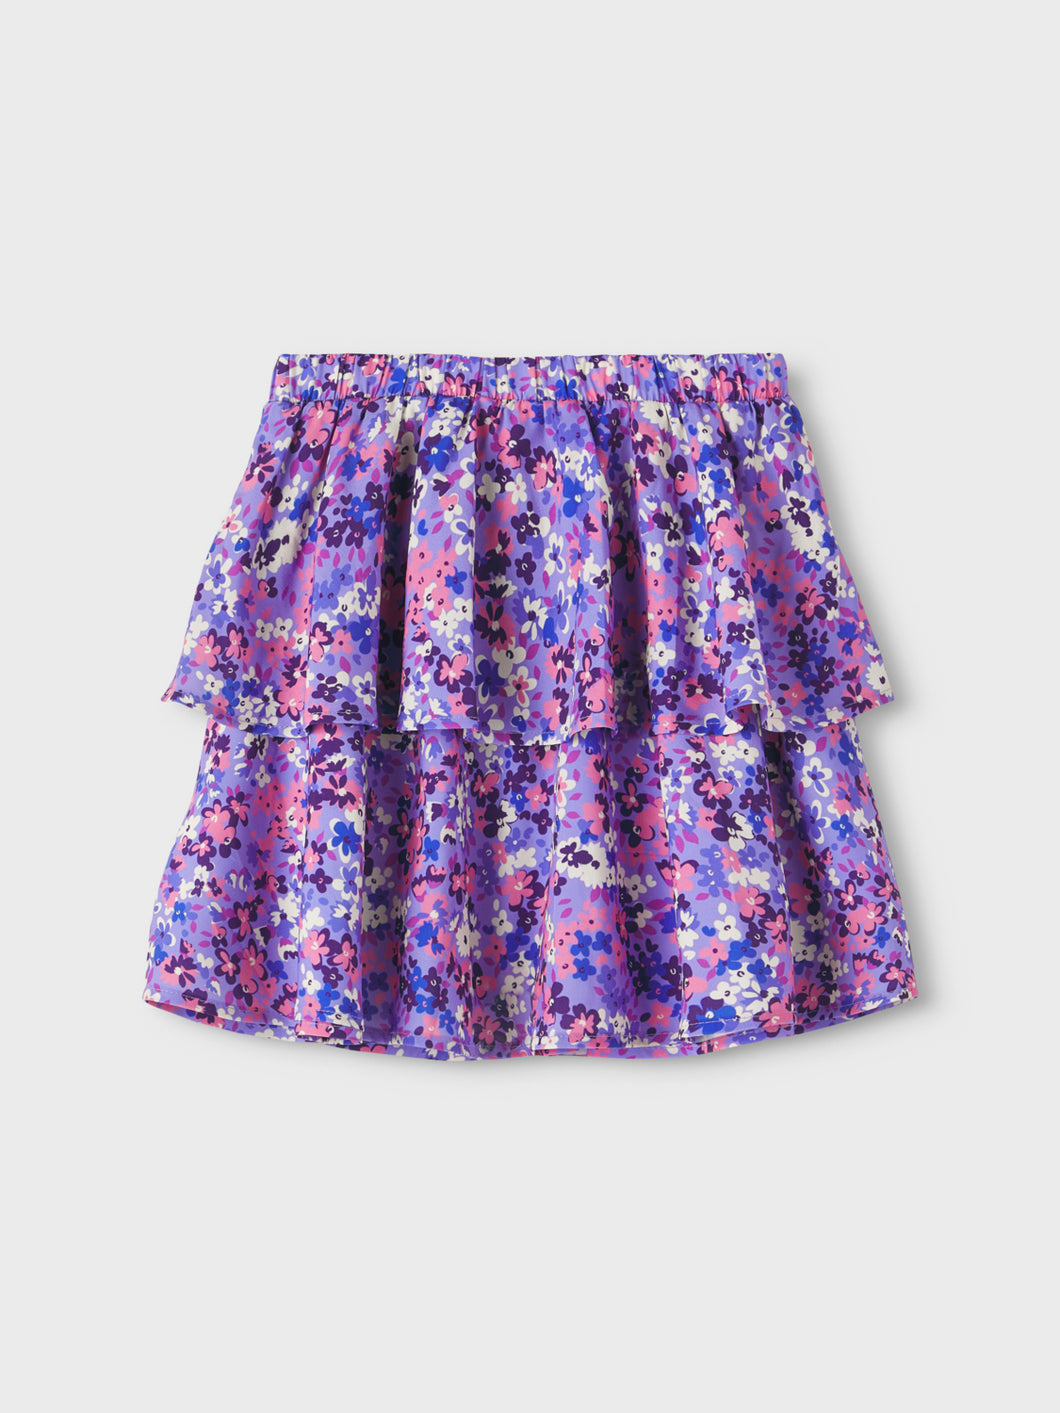 NKFLUNA Skirts - Aster Purple